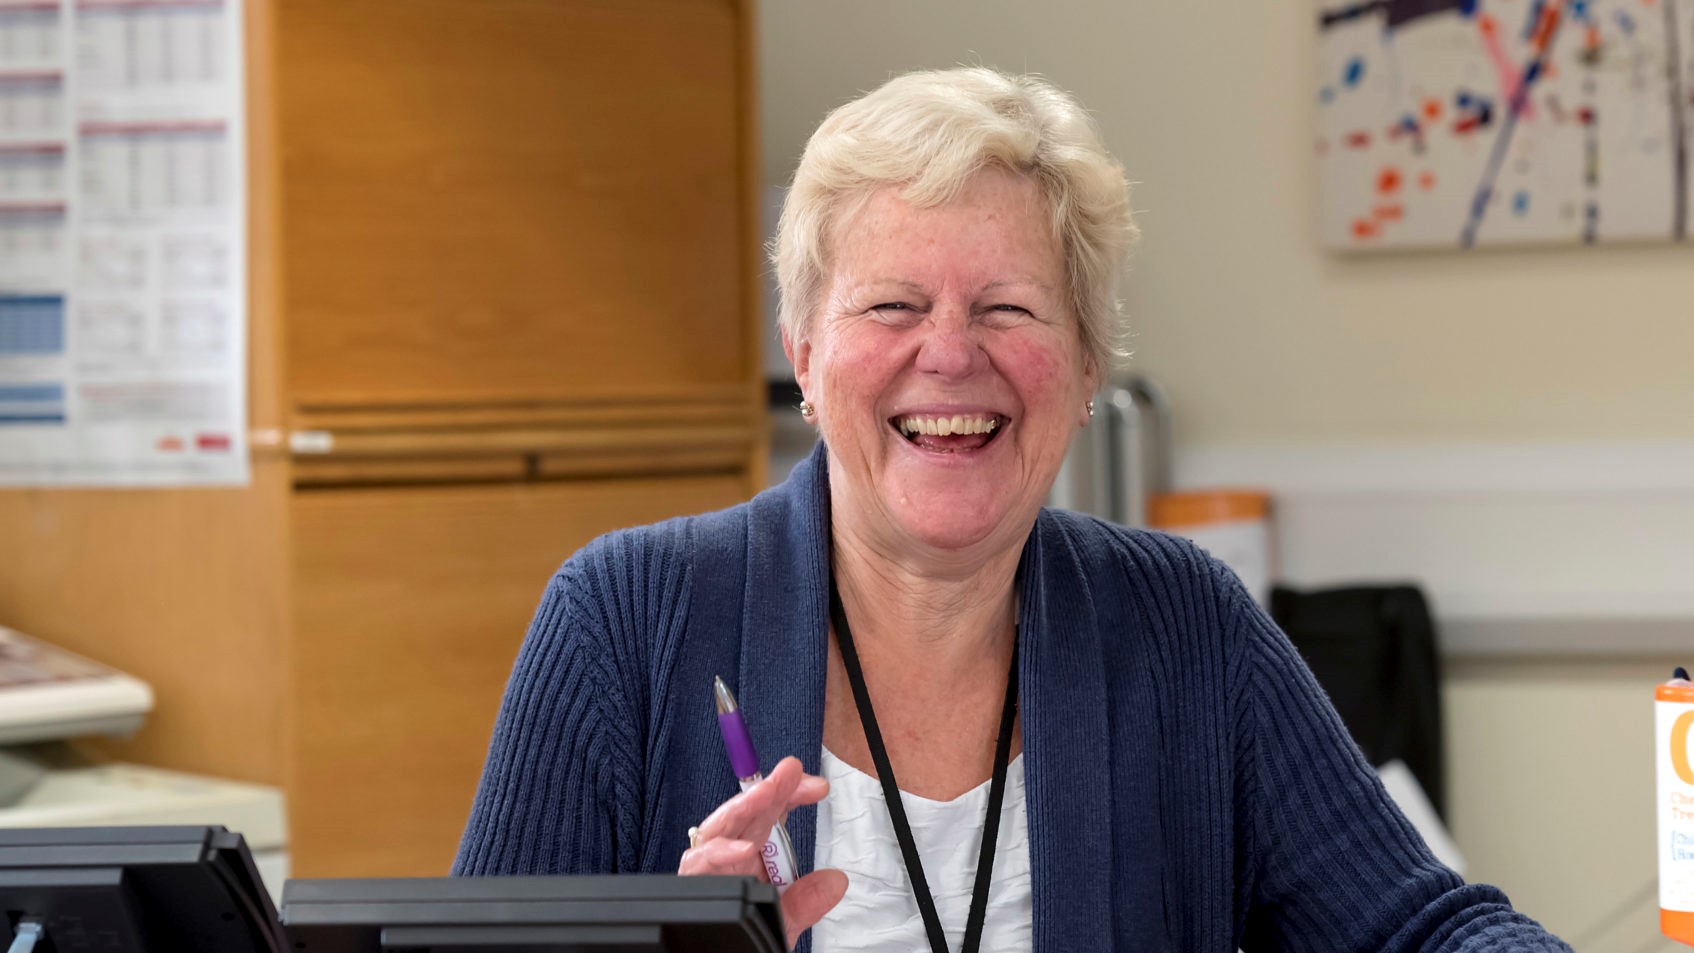 A female volunteer smiling behind a desk